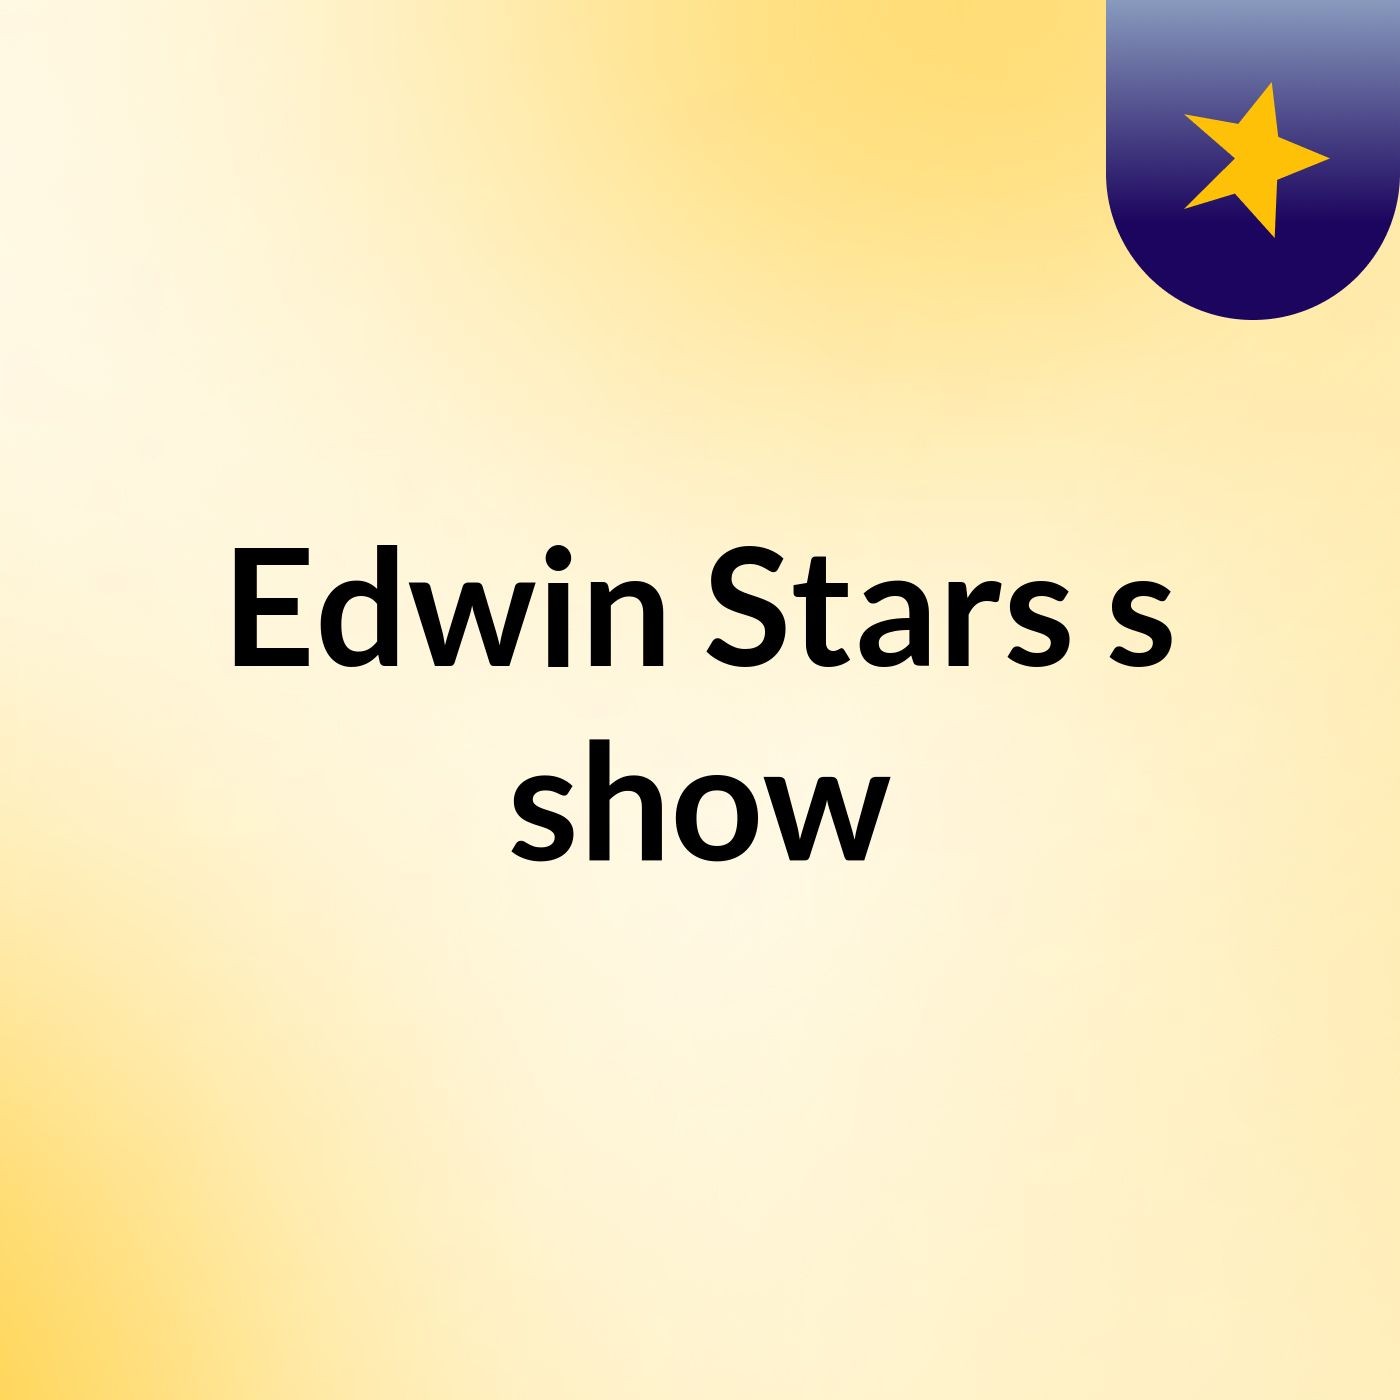 Edwin Stars's show